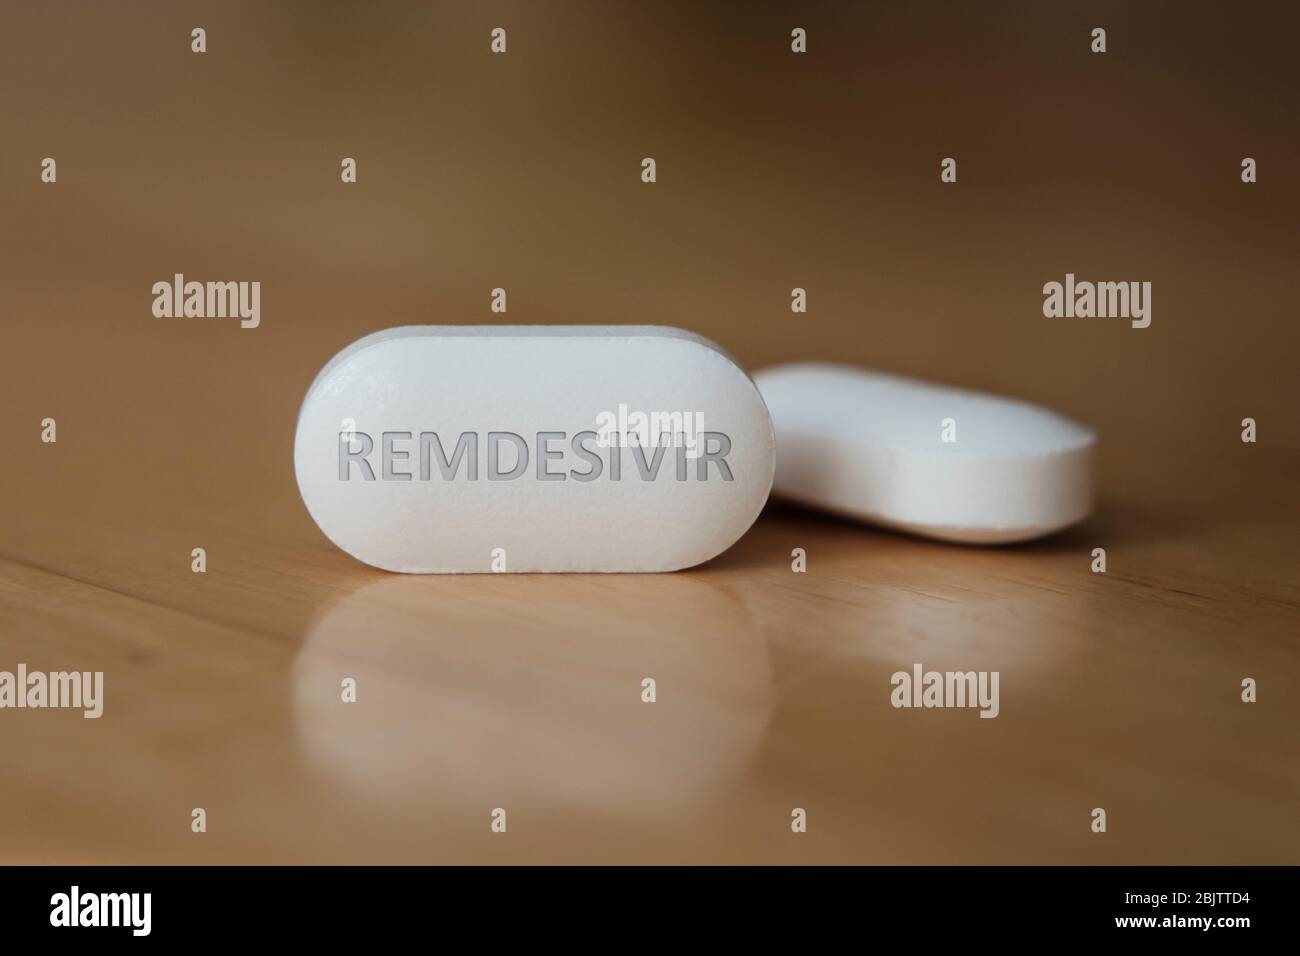 Remdesivir Pille auf dem Tisch. Konzeptfoto. Illustrativ für potenzielle COVID-19-Behandlungsmedikament. Selektiver Fokus, geringe Schärfentiefe. Stockfoto